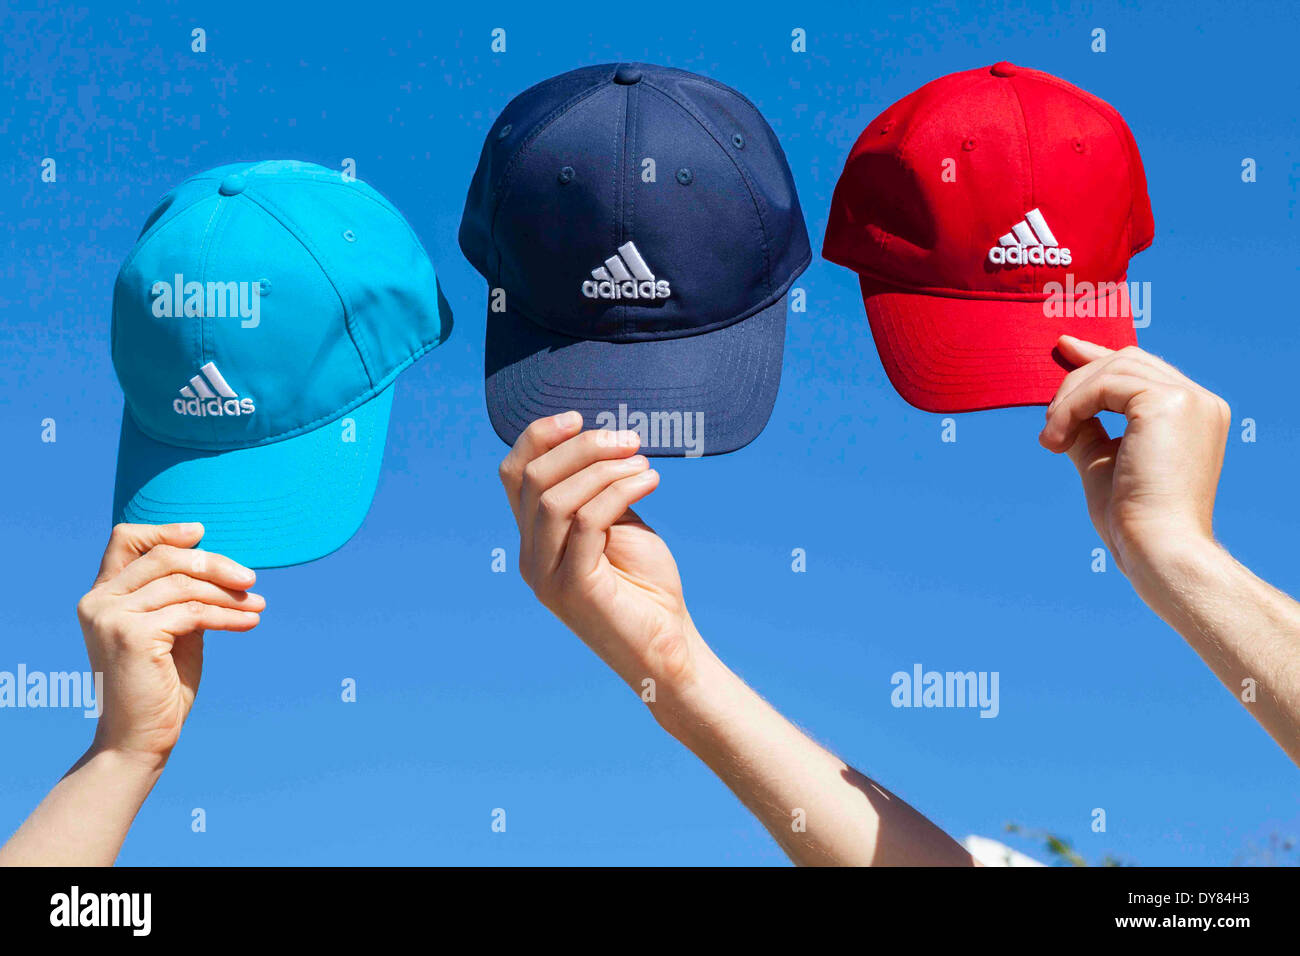 Adidas Caps Stock Photo